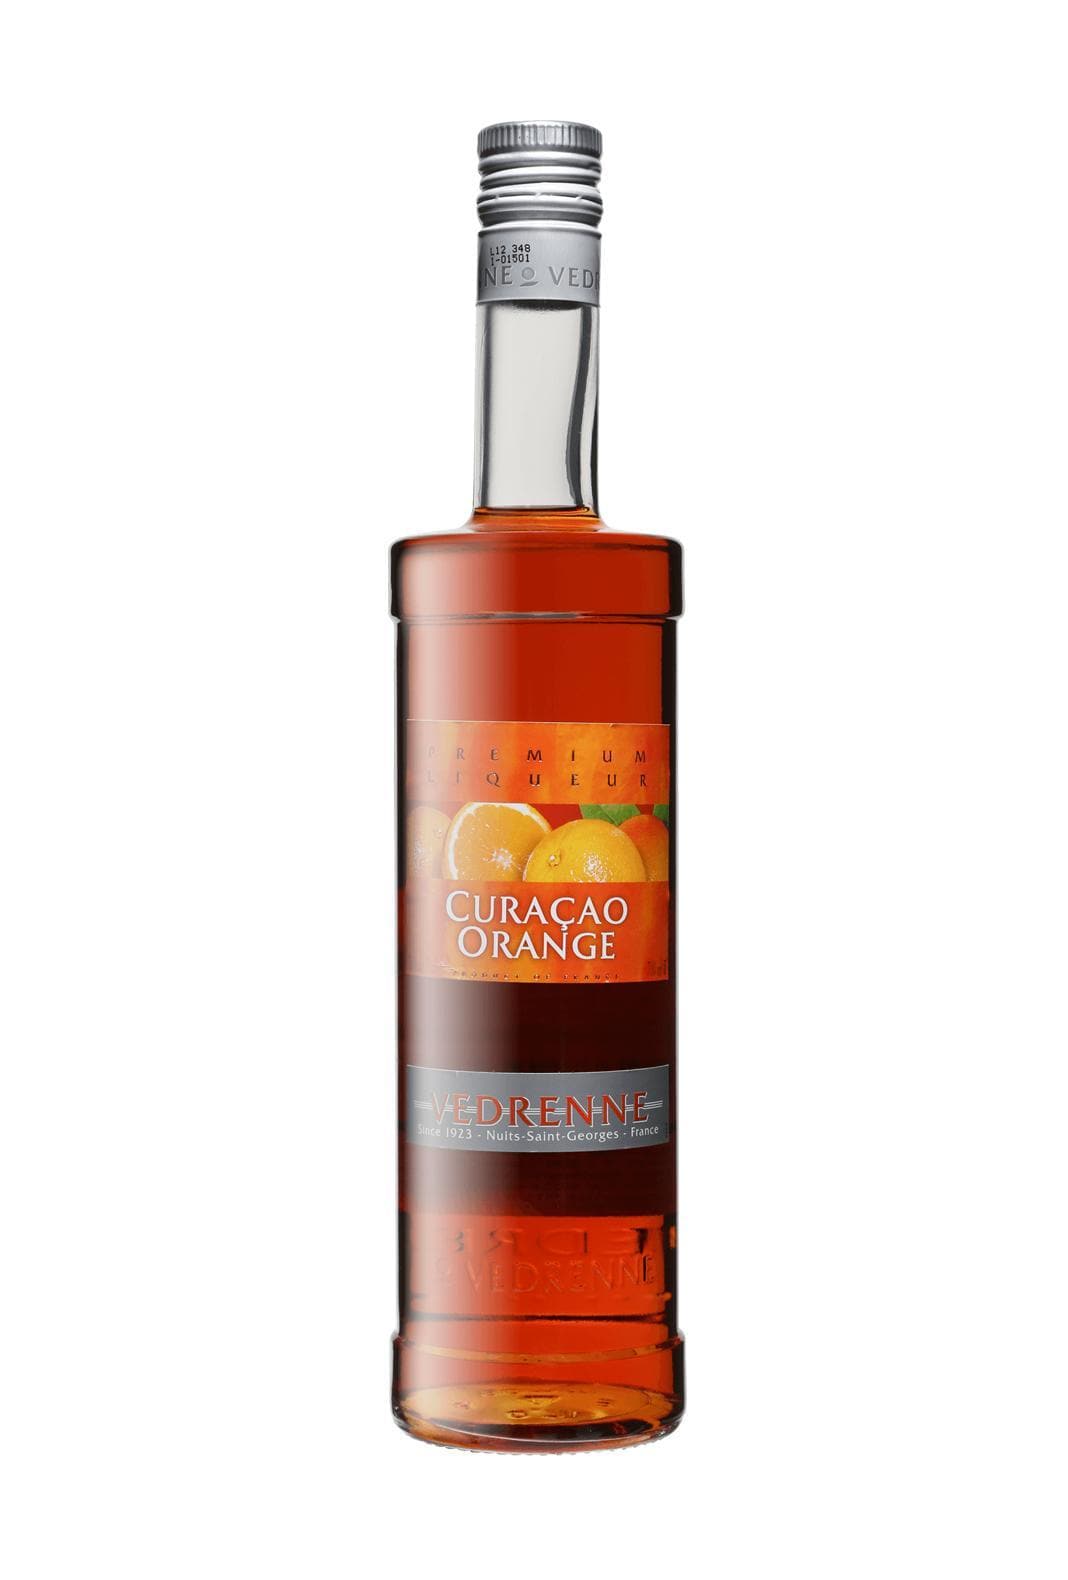 Vedrenne Liqueur Curacao Orange (Orange Curacao) 35% 700ml | Liqueurs | Shop online at Spirits of France